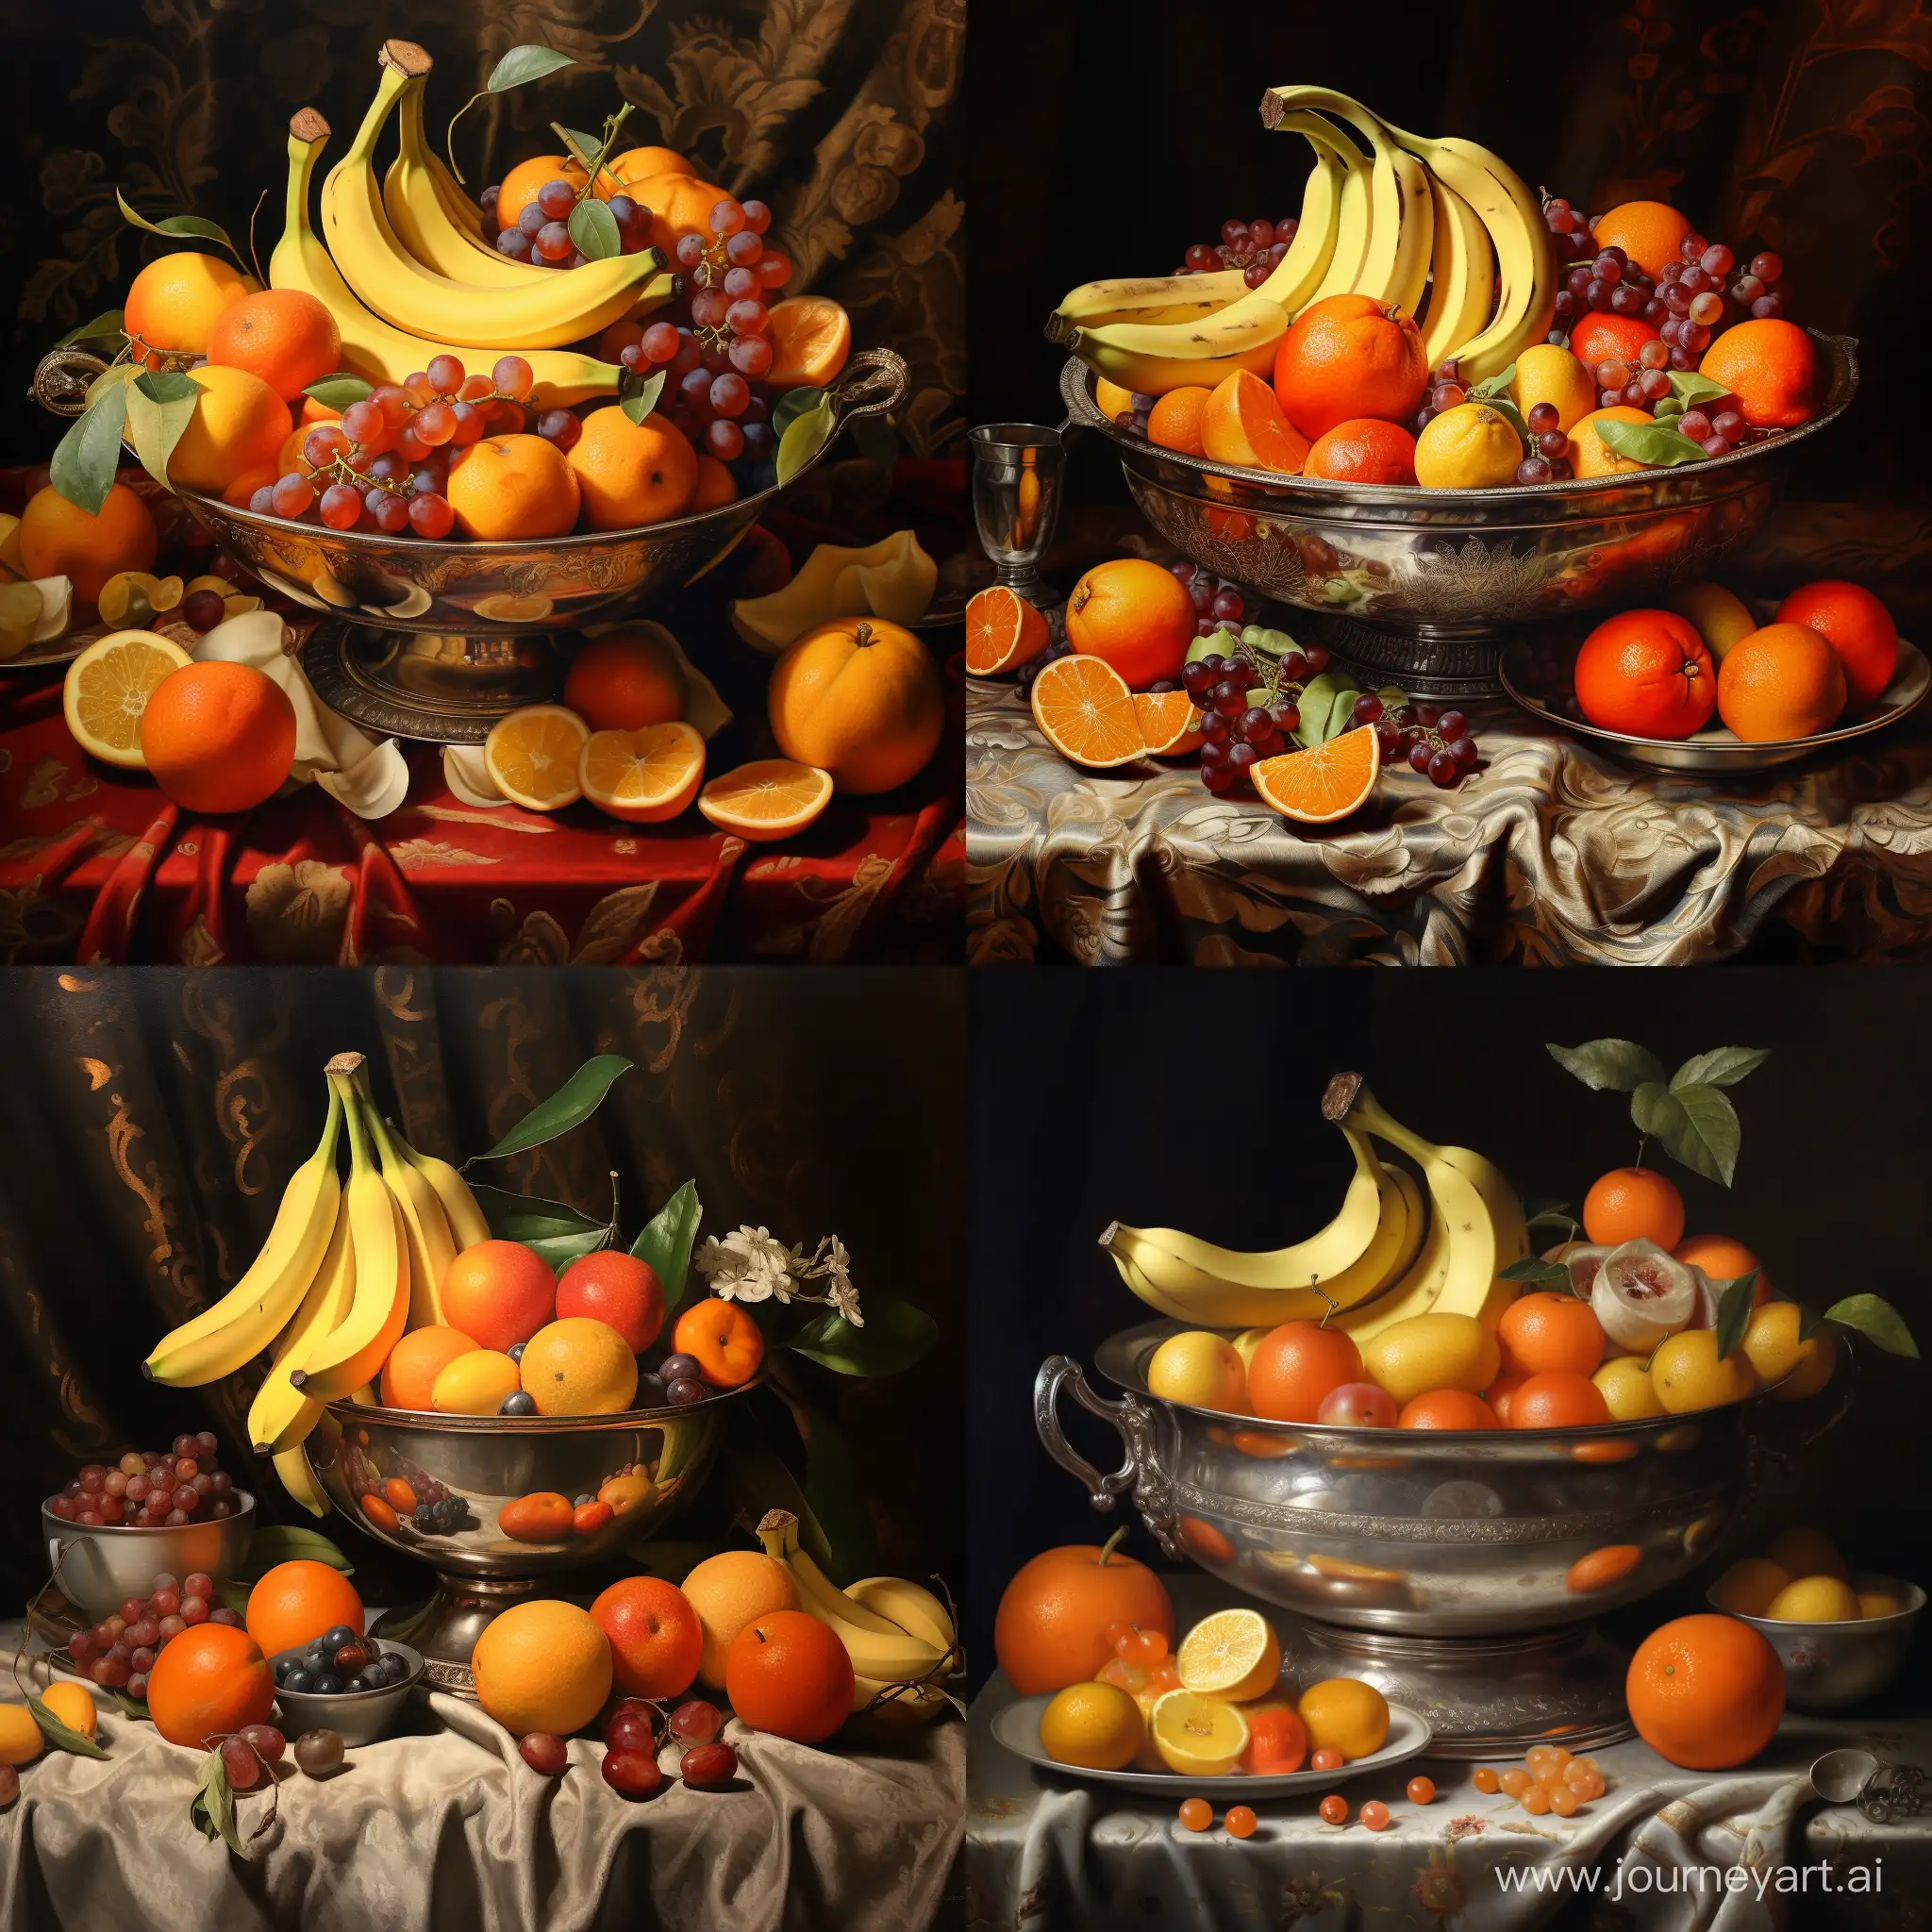 生中果盆, 有柑及香蕉放於大銀盆中, 背景洒金黃箋, 16世紀油畫風